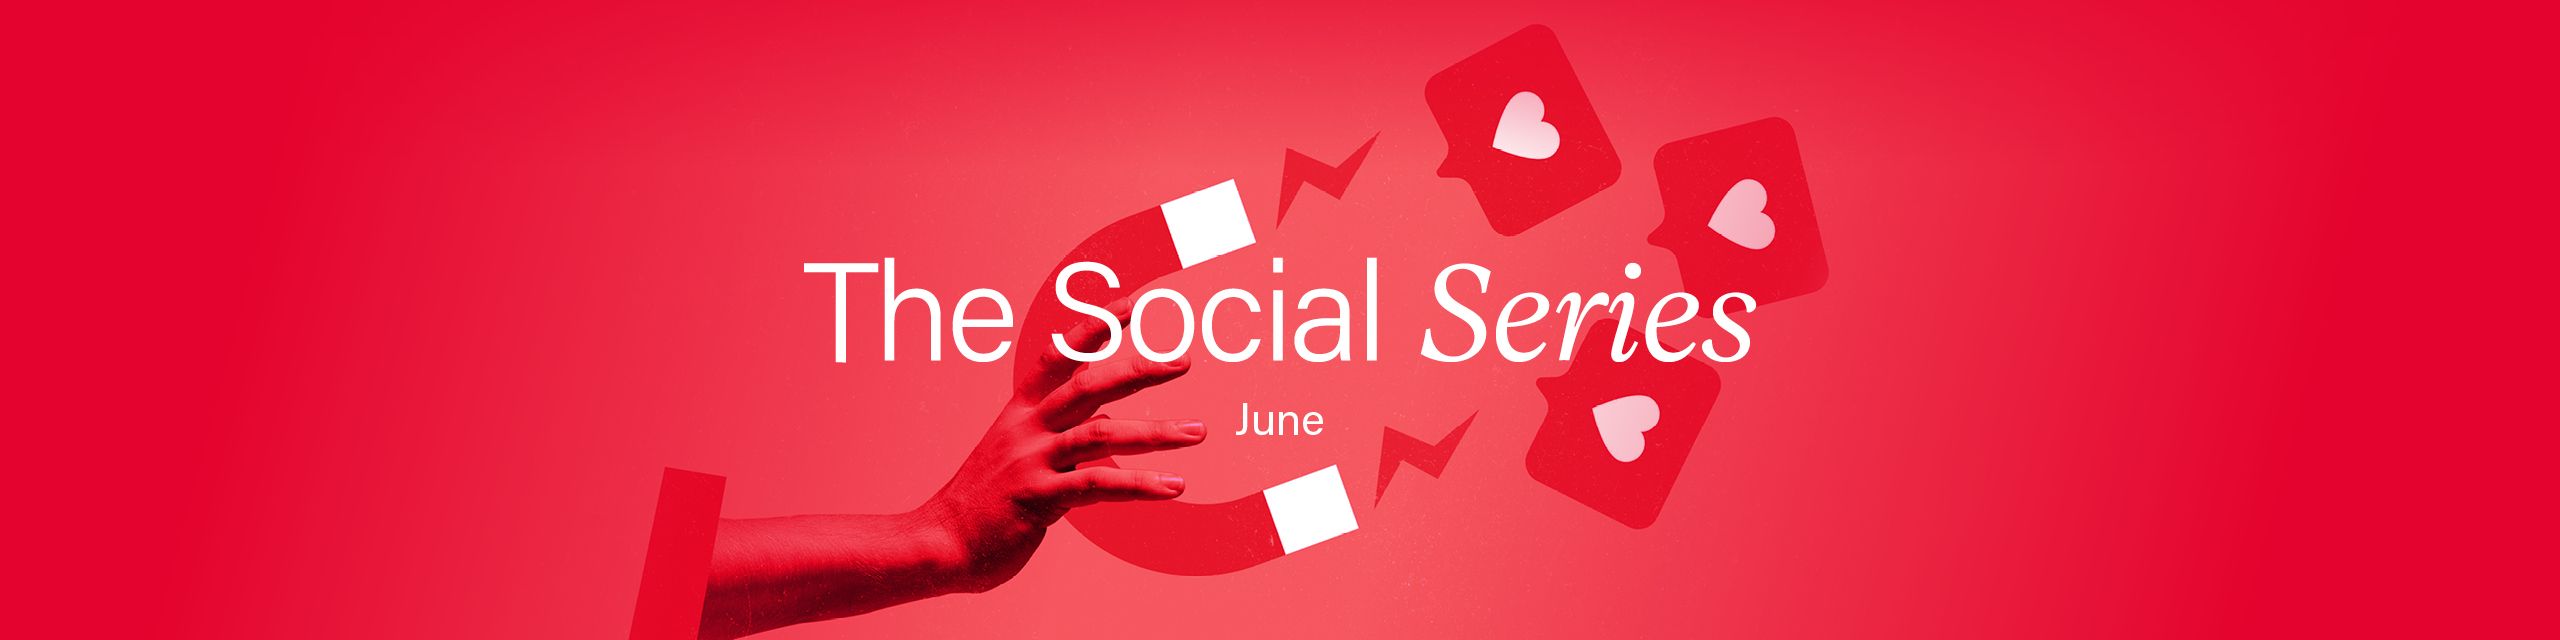 TheSocialSeries Hero Banner.jpg